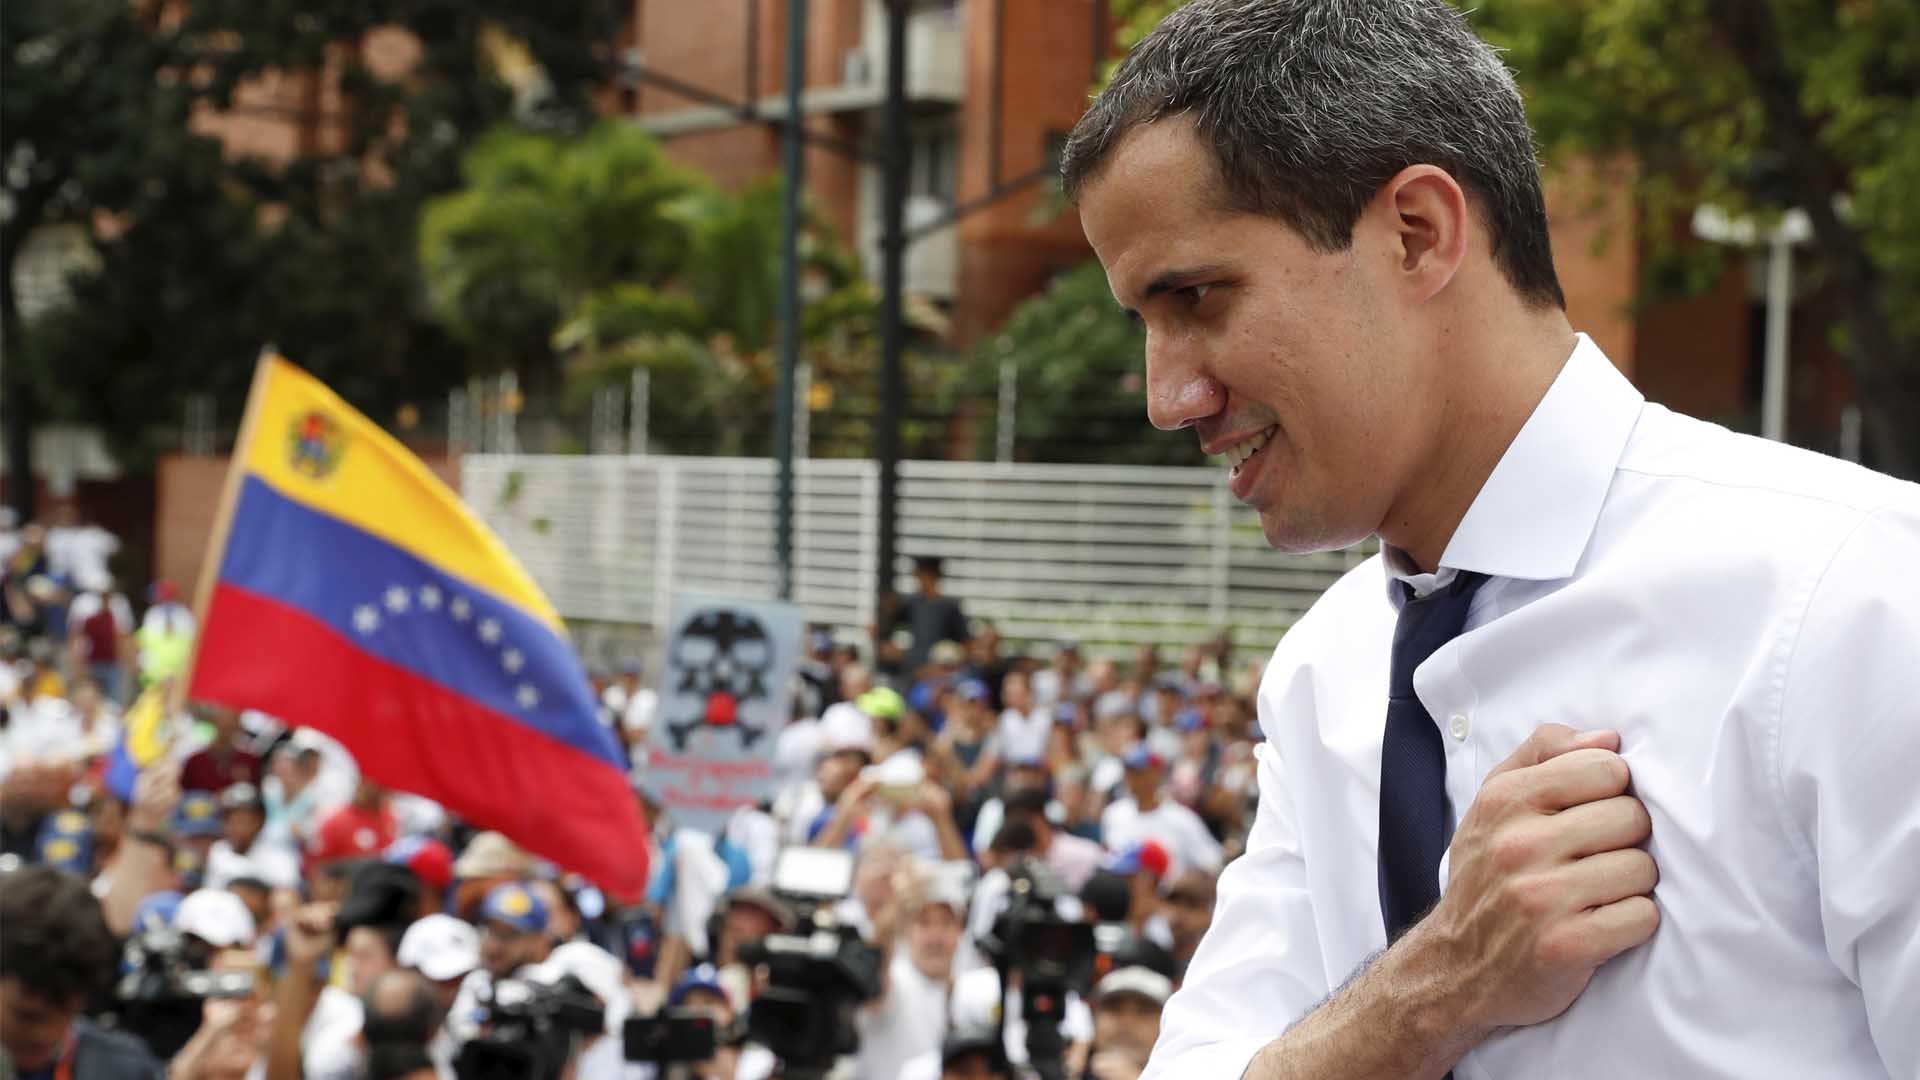 Guaidó anuncia la reanudación del diálogo con la "dictadura" de Maduro en Barbados